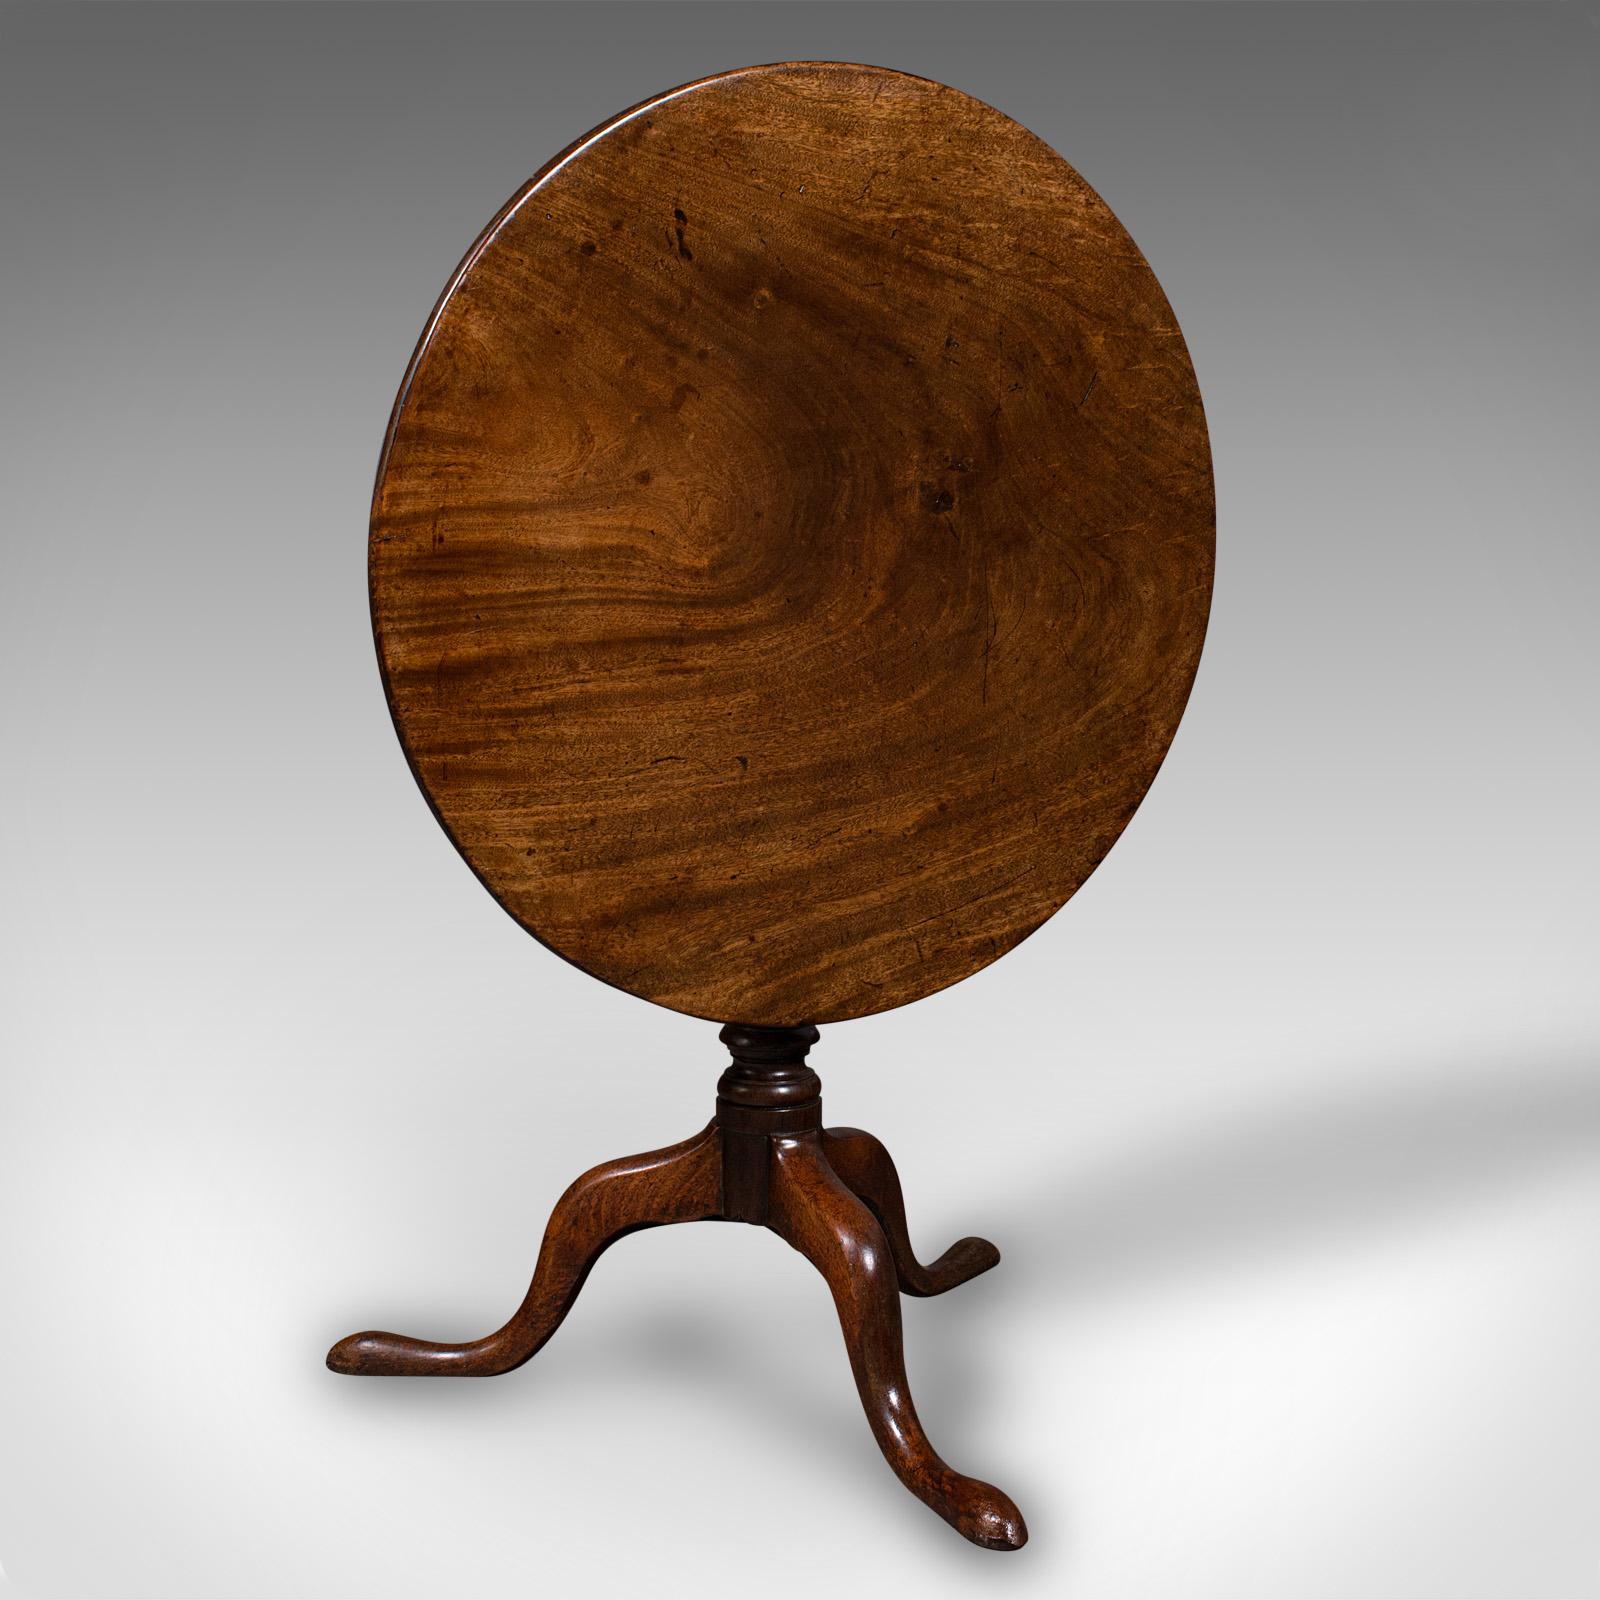 Dies ist ein antiker Beistelltisch. Ein englischer Mahagoni-Tisch mit kippbarer Platte und Vogelkäfig, aus der georgianischen Zeit, um 1800.

Präsentiert sich wunderschön mit einem vielseitigen, voll beweglichen Oberteil
Zeigt eine wünschenswerte